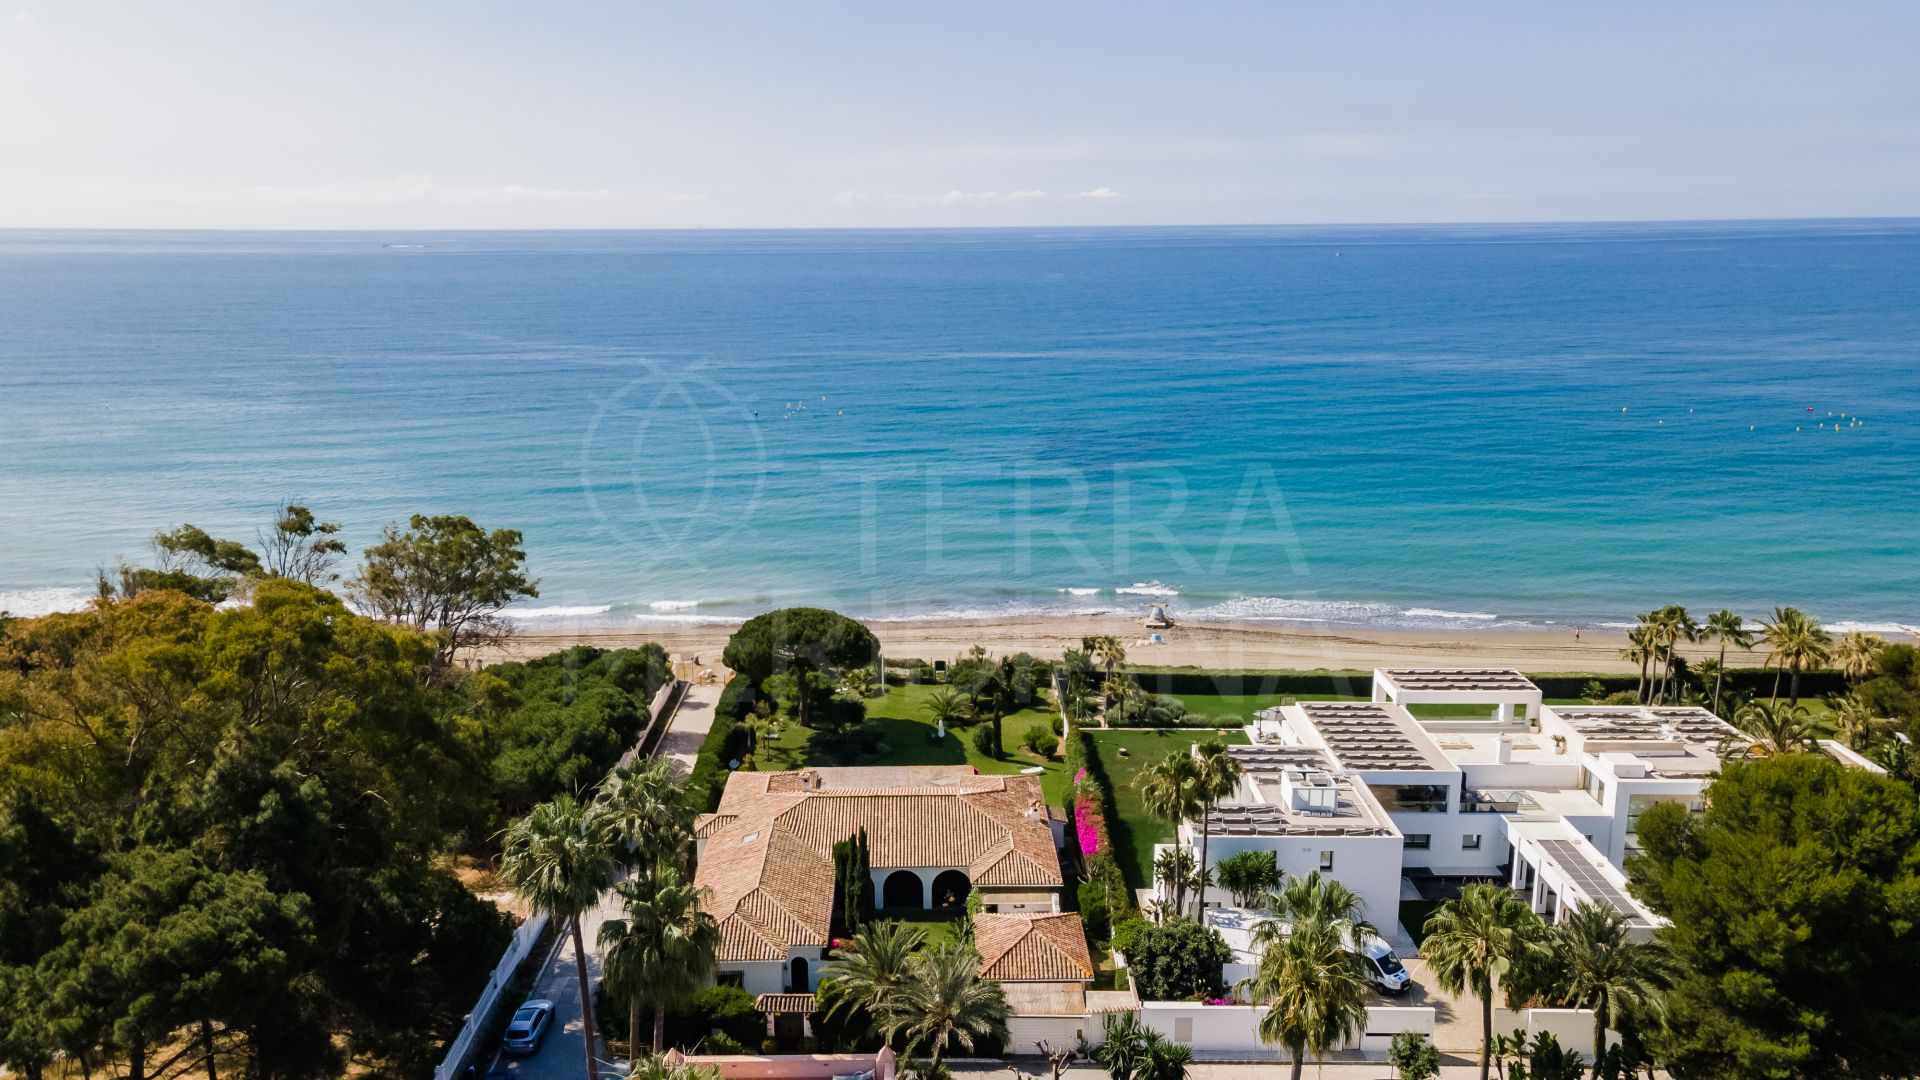 Opportunité d'acheter une villa en première ligne de plage à réformer à Paraiso Barronal, Estepona.